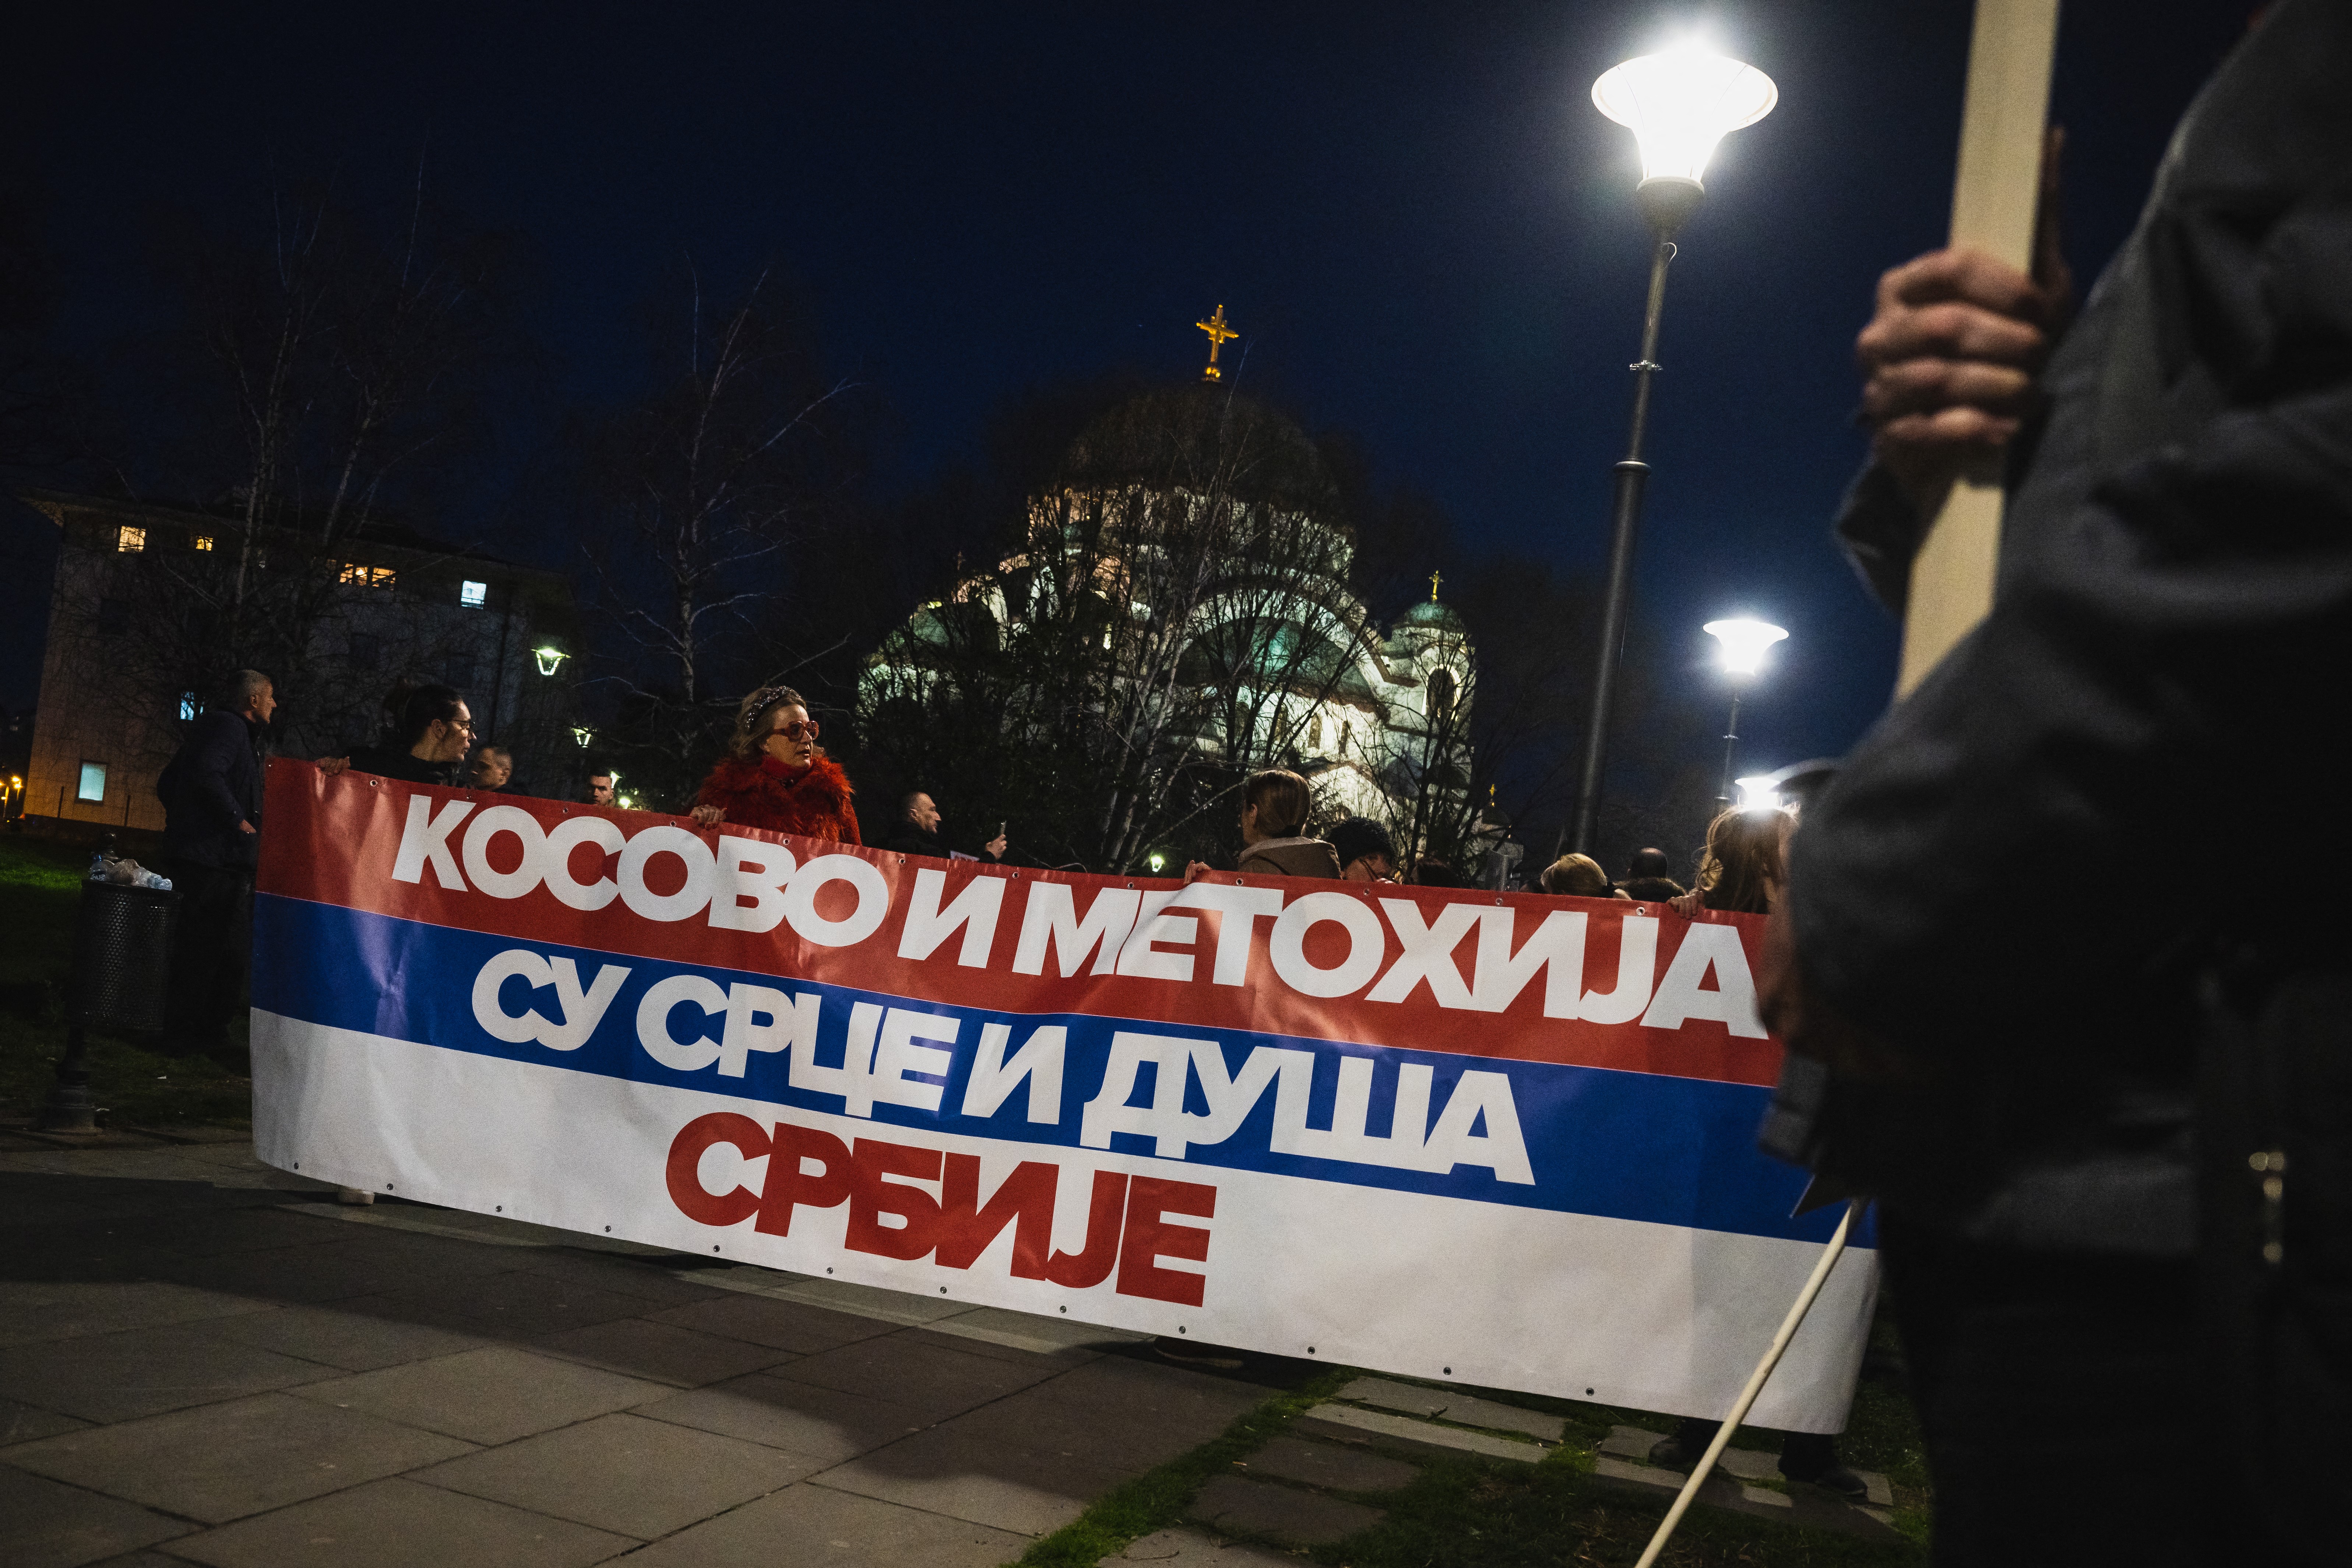 Des manifestants arborent une banderole sur laquelle il est inscrit "Le Kosovo et la Métochie sont le cœur et l'âme de la Serbie", lors d'un rassemblement le 17 mars à Belgrade (Serbie). Andrej ISAKOVIC / AFP